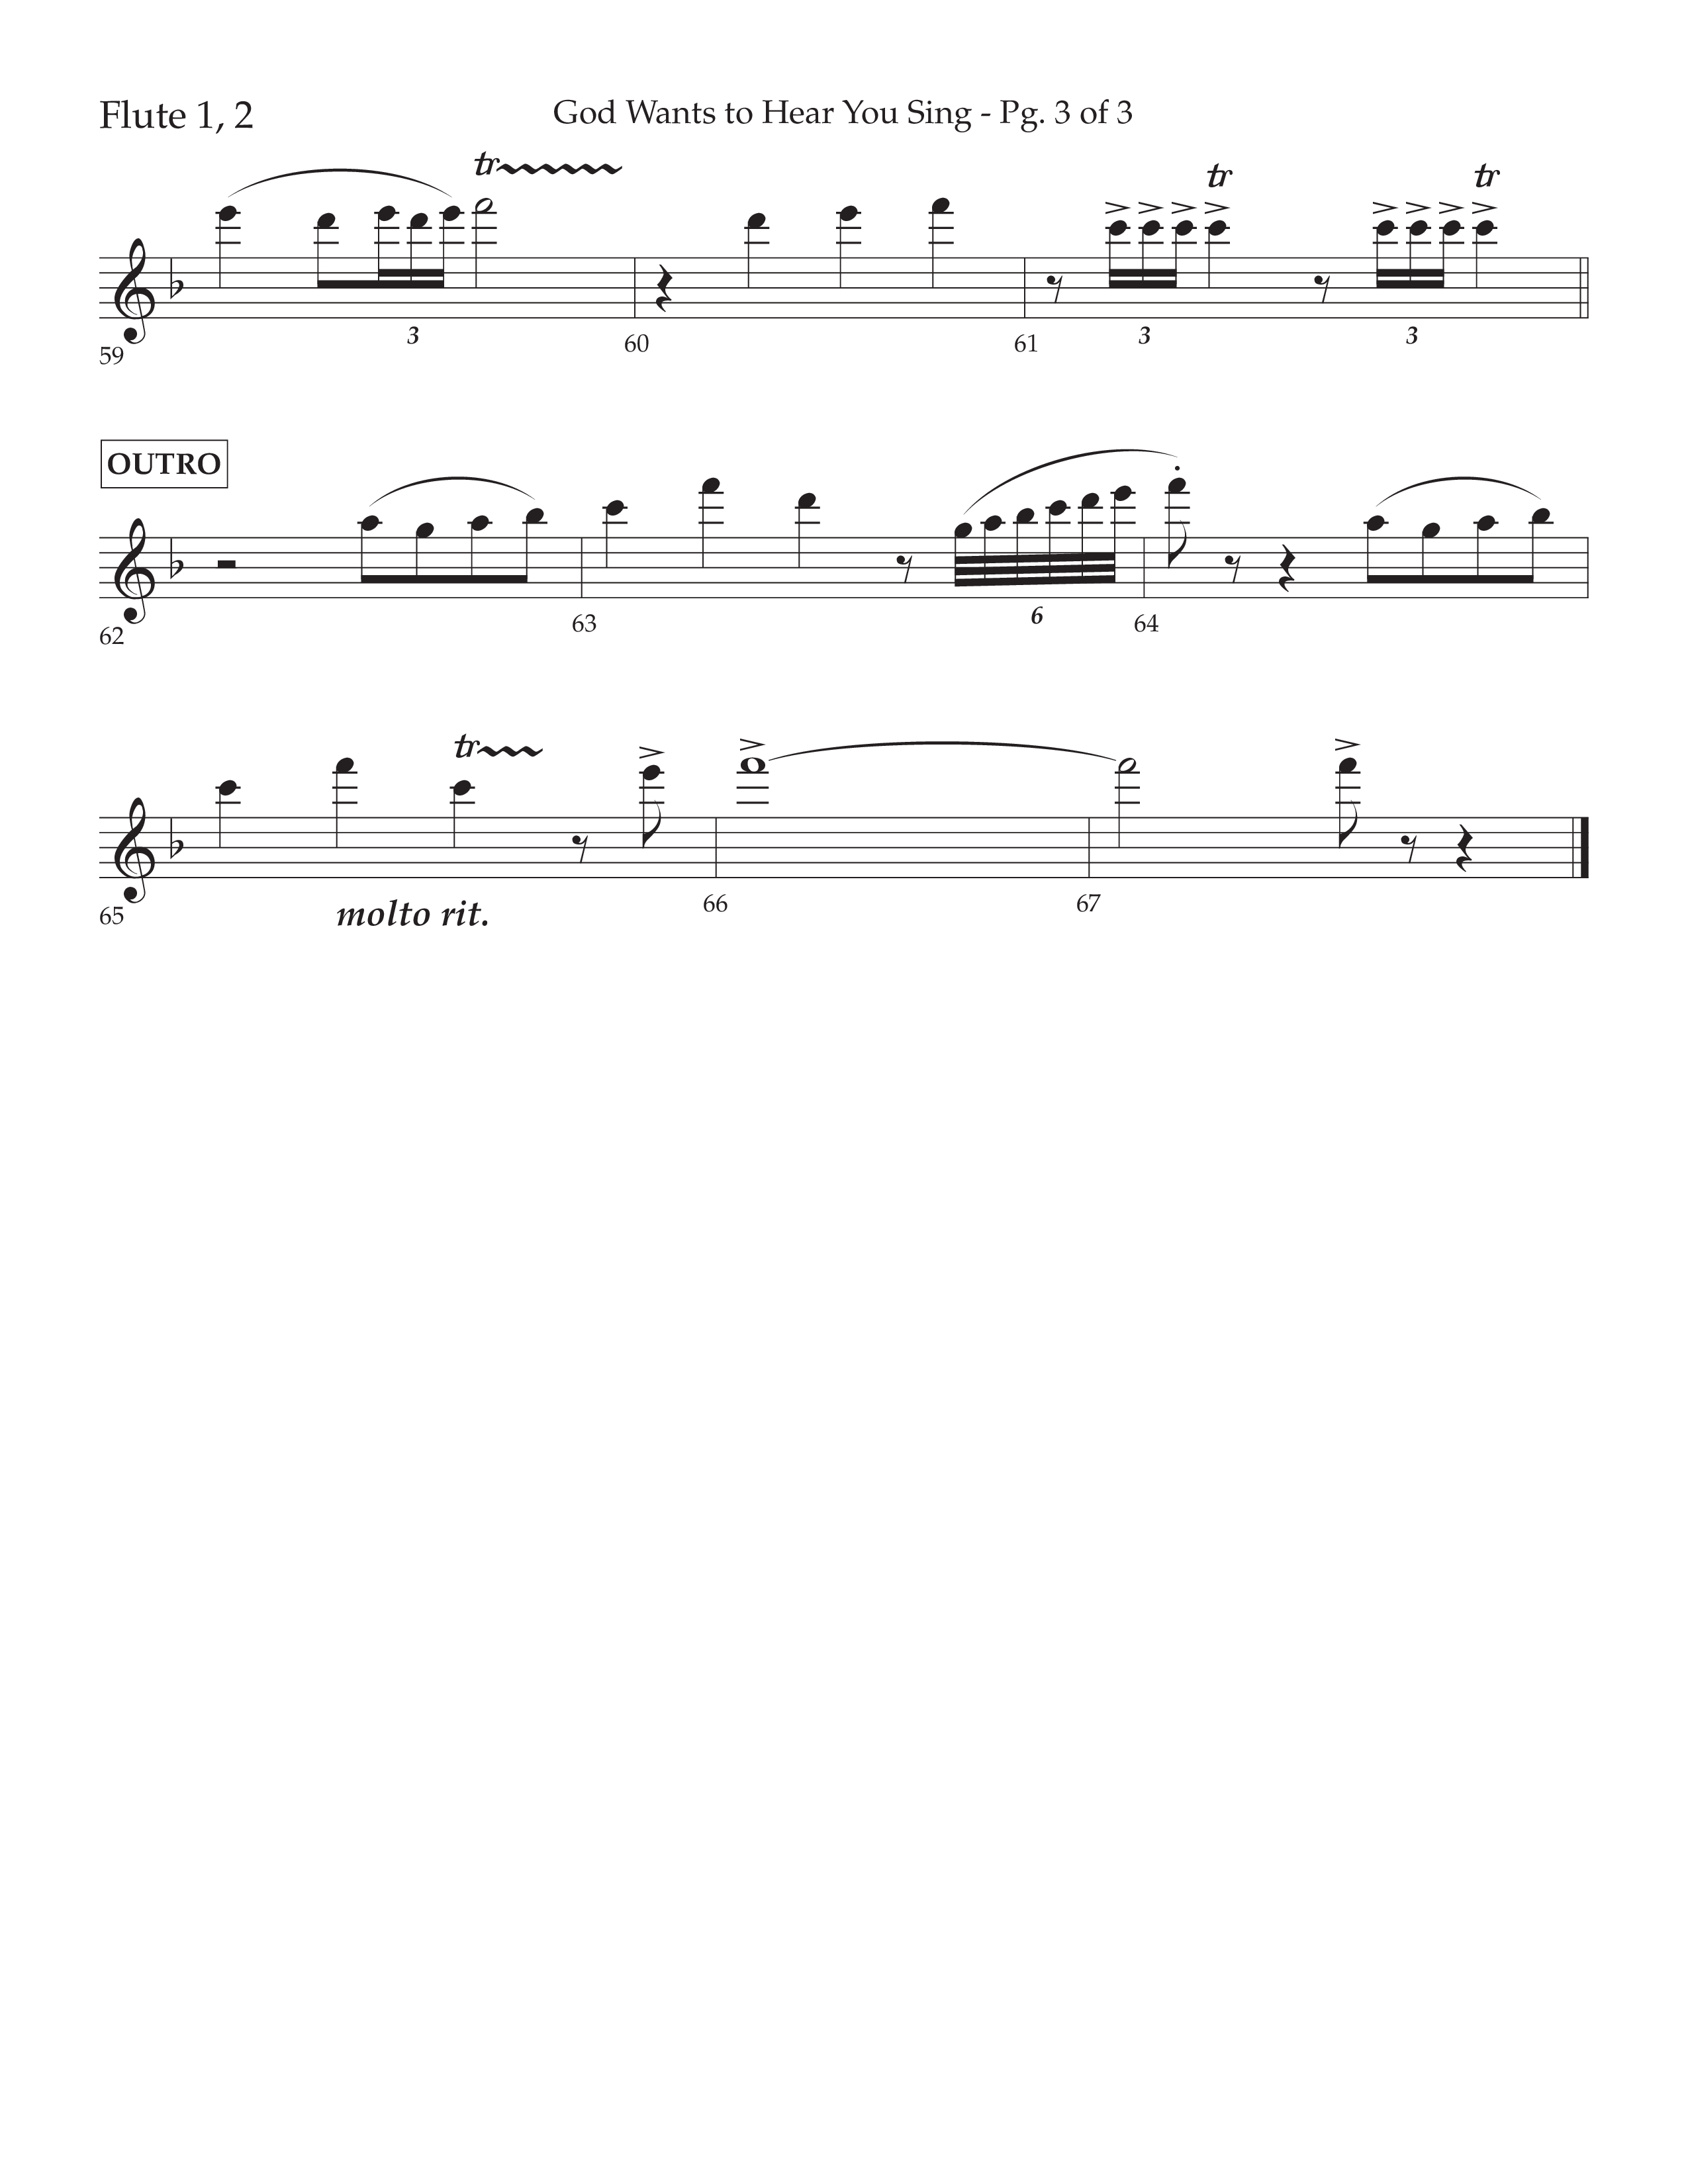 God Wants To Hear You Sing (Choral Anthem SATB) Flute 1/2 (Lifeway Choral / Arr. Bradley Knight)